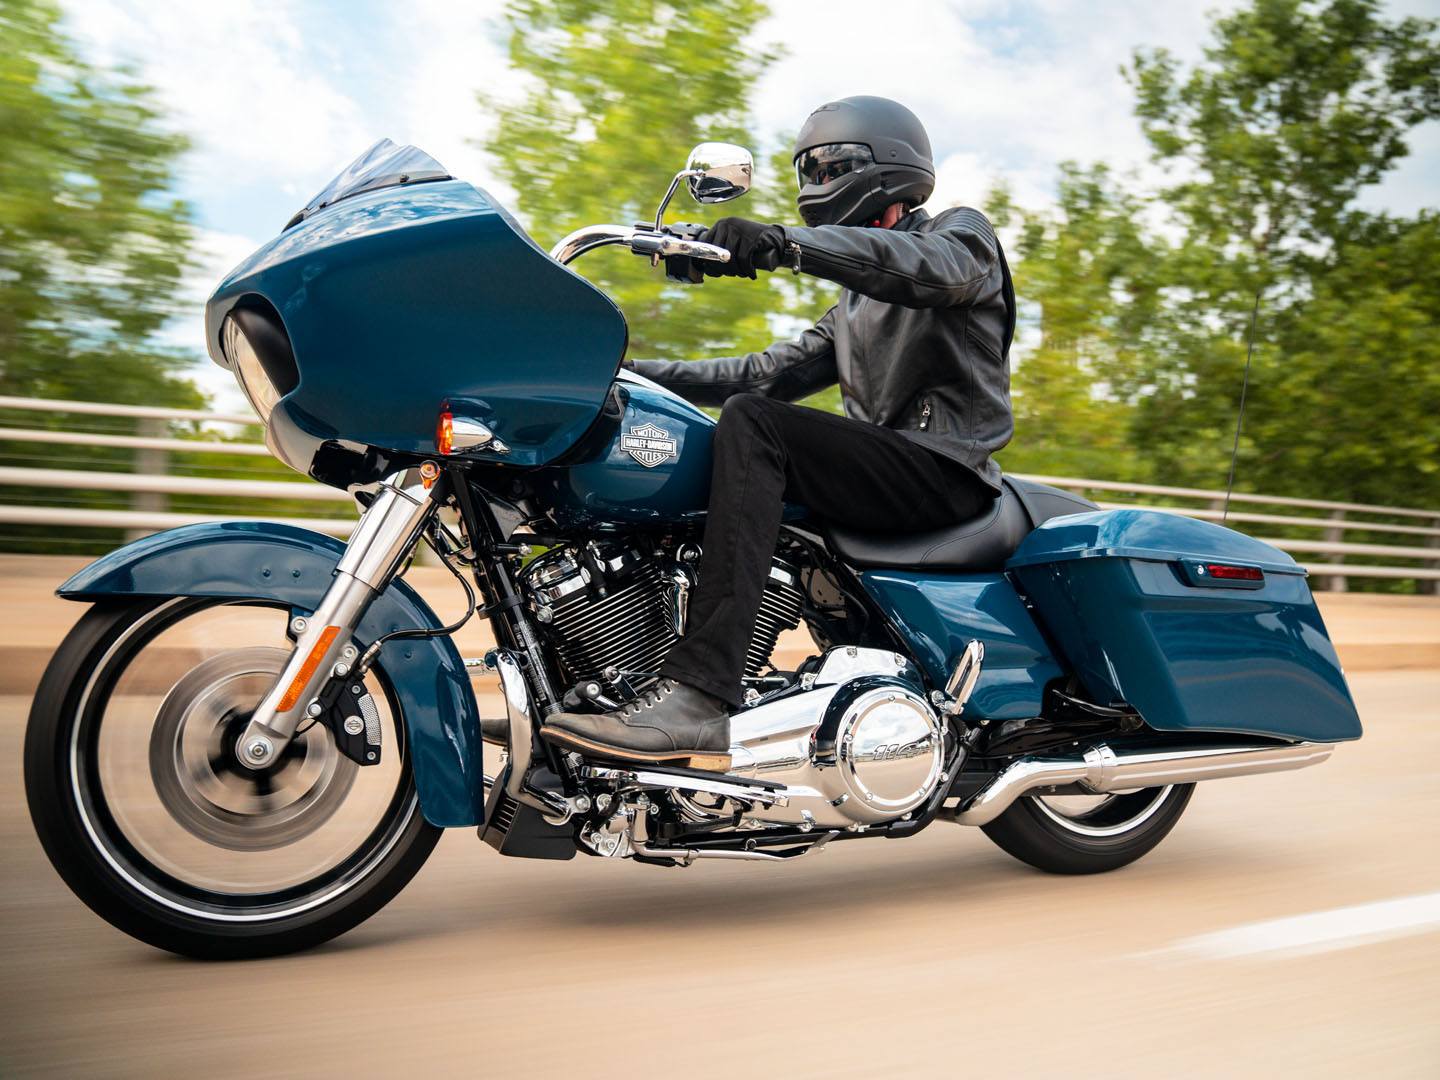 2021 Harley-Davidson Road Glide® Special in Ukiah, California - Photo 18